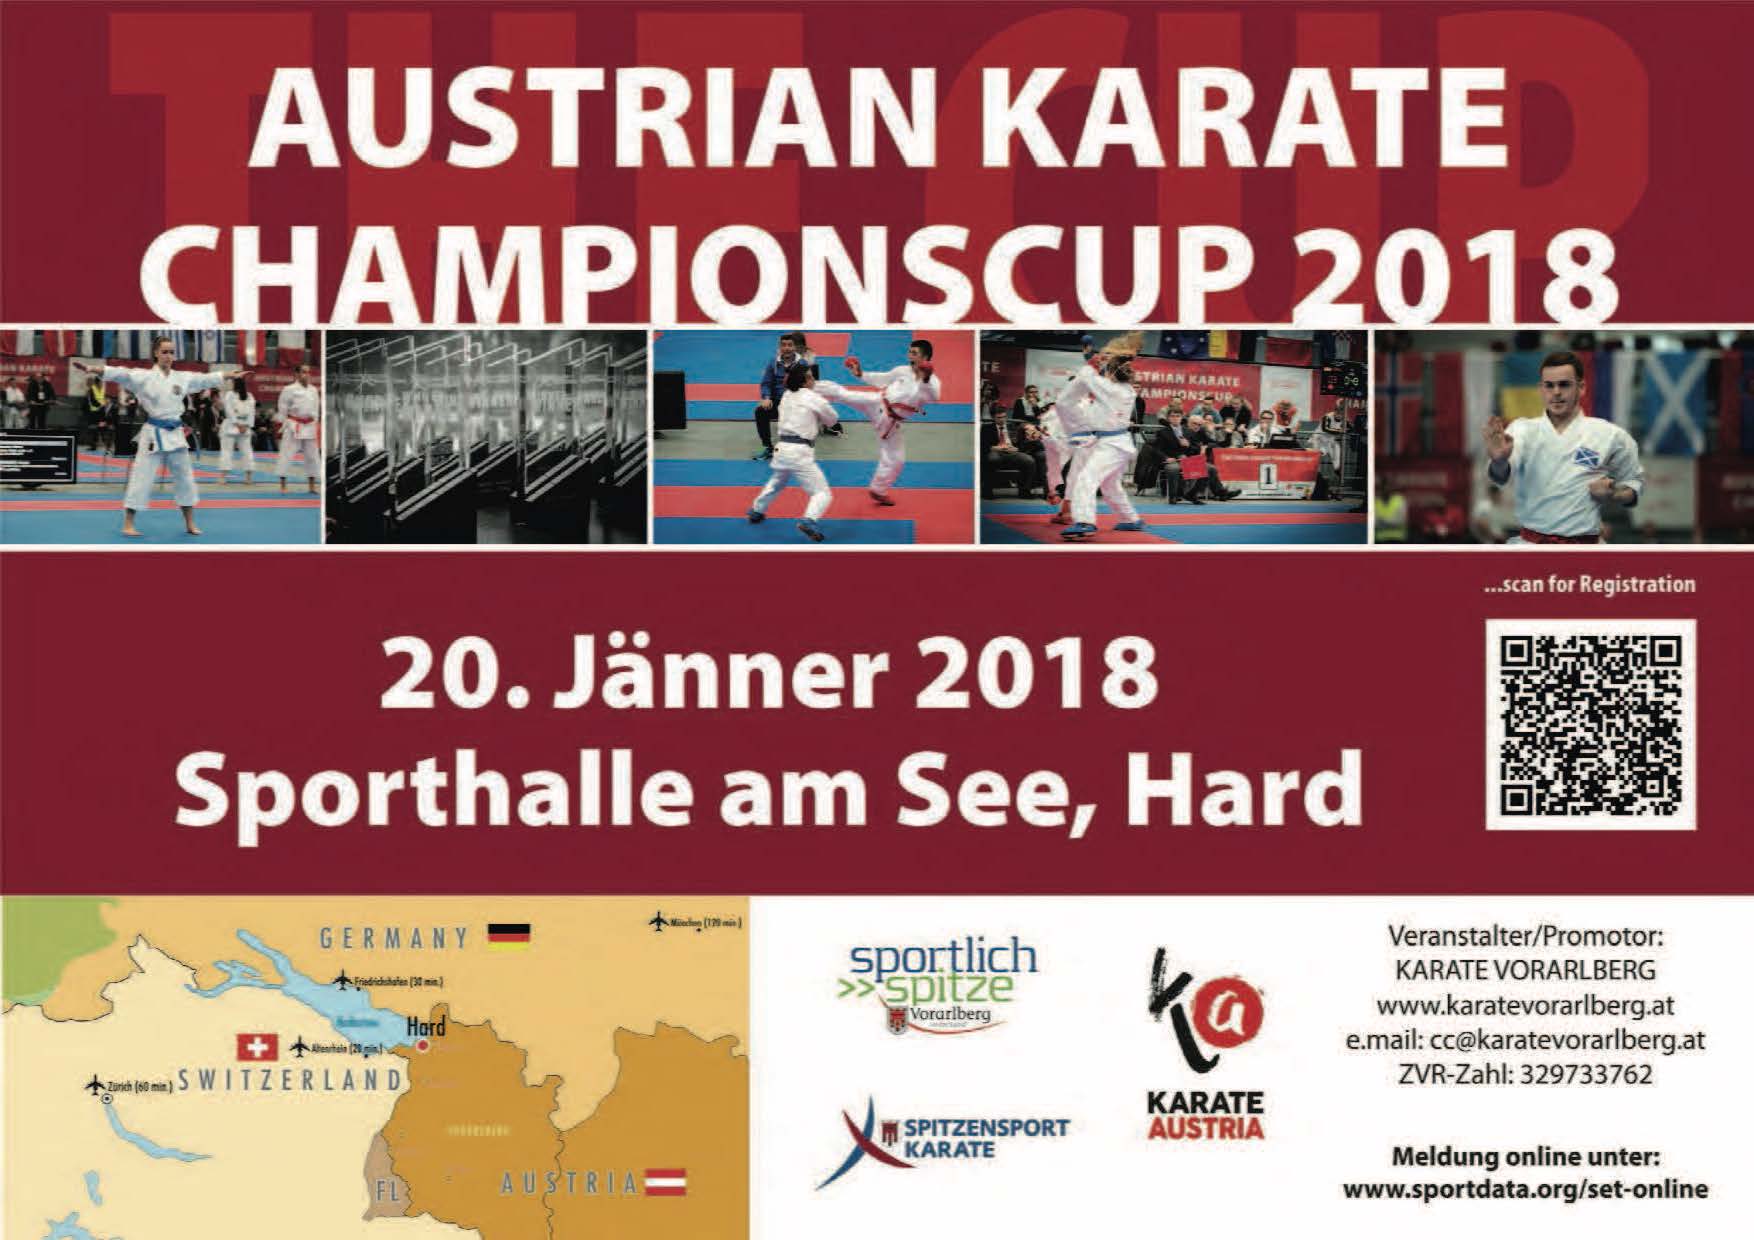 Le Nazionali Cadetti, Juniores e Under 21 domani impegnate nell'Austrian Karate Championscup 2018